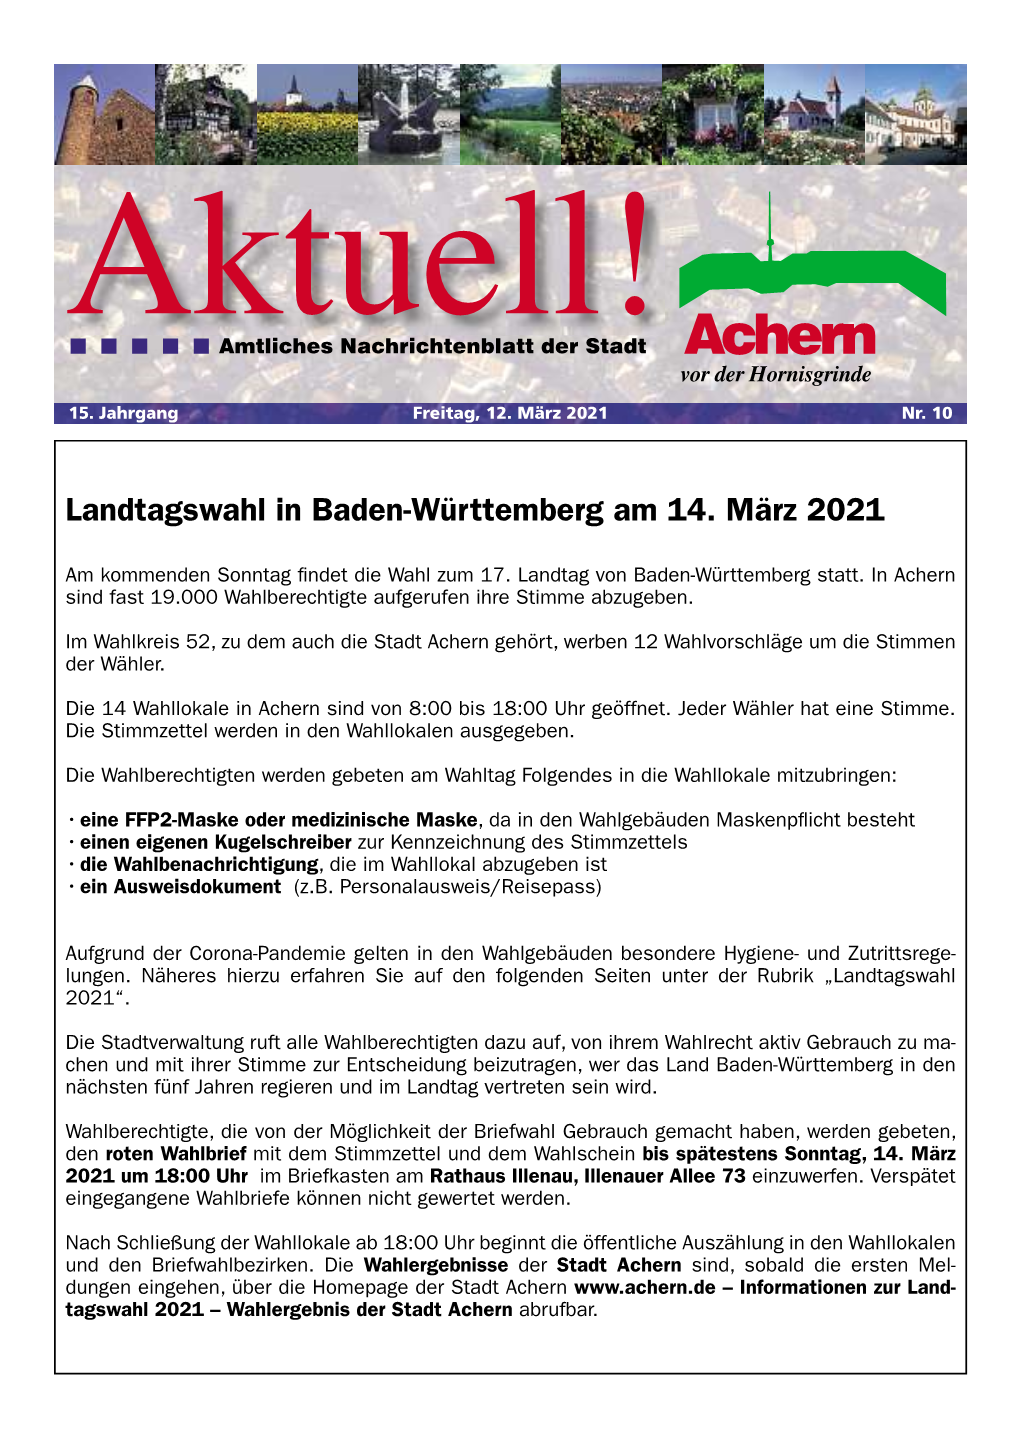 Landtagswahl in Baden-Württemberg Am 14. März 2021